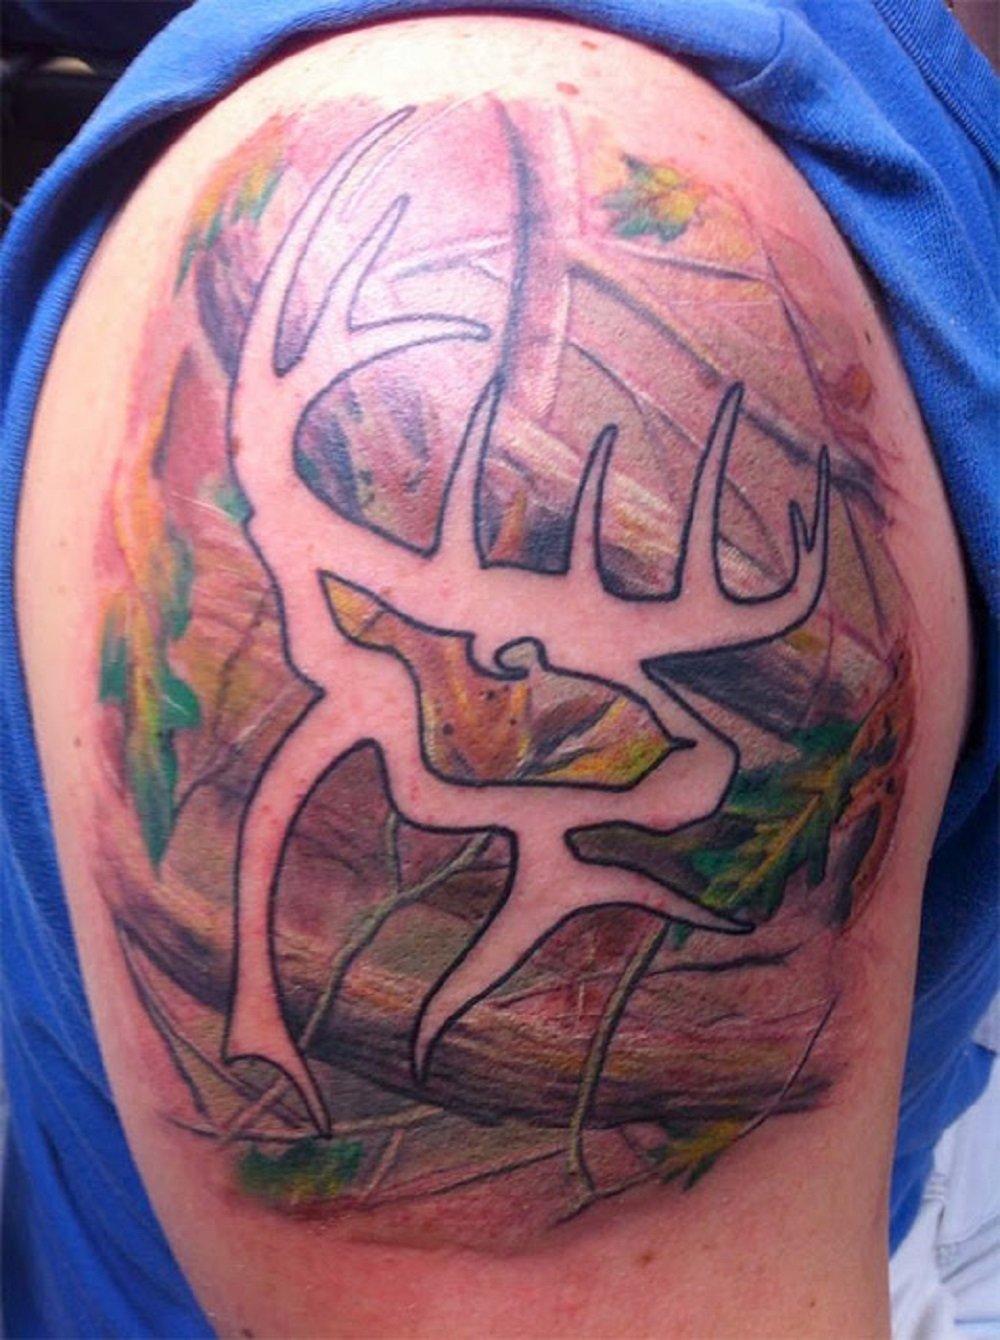 realtree camo tattoo designs